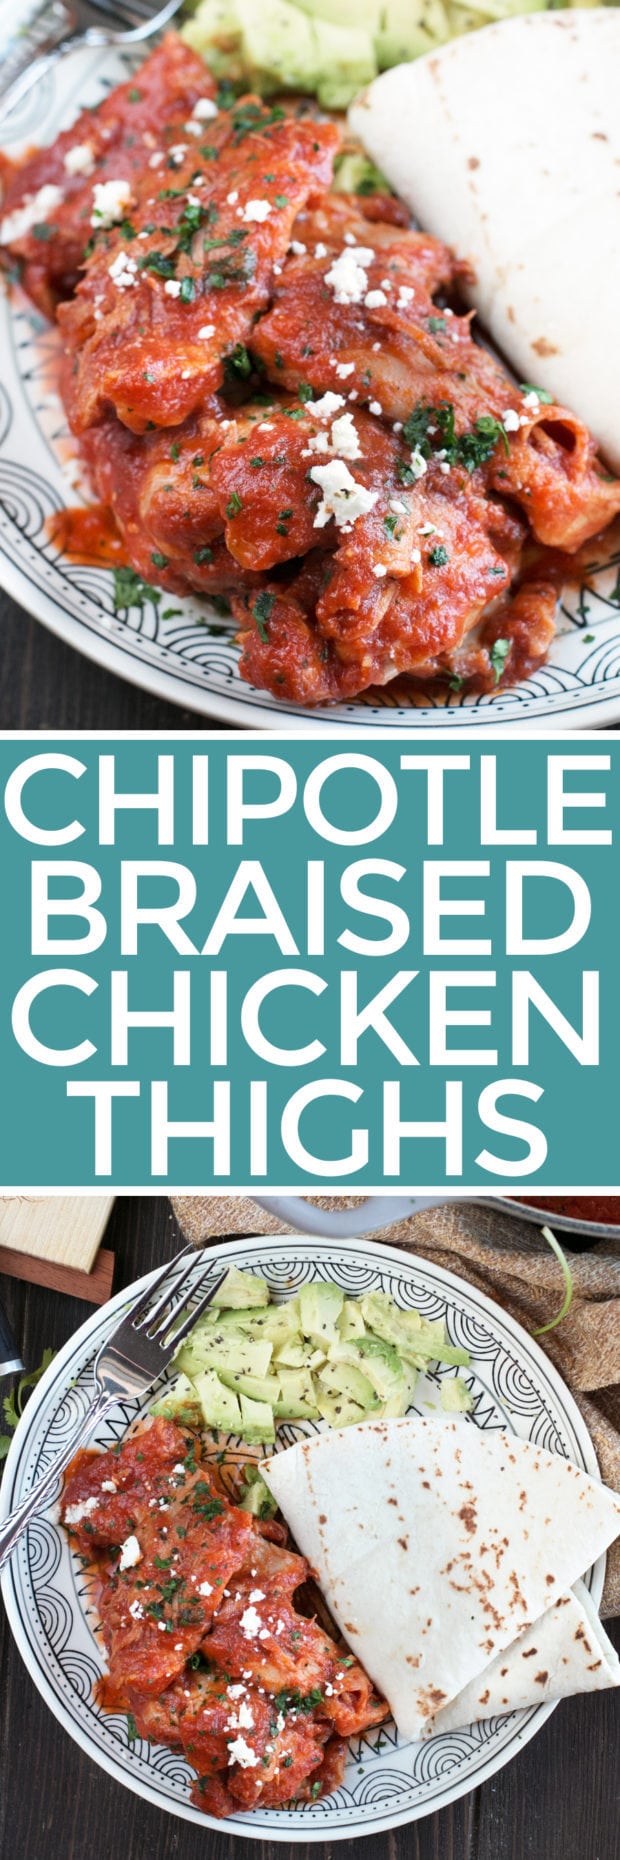 Chipotle Braised Chicken Thighs